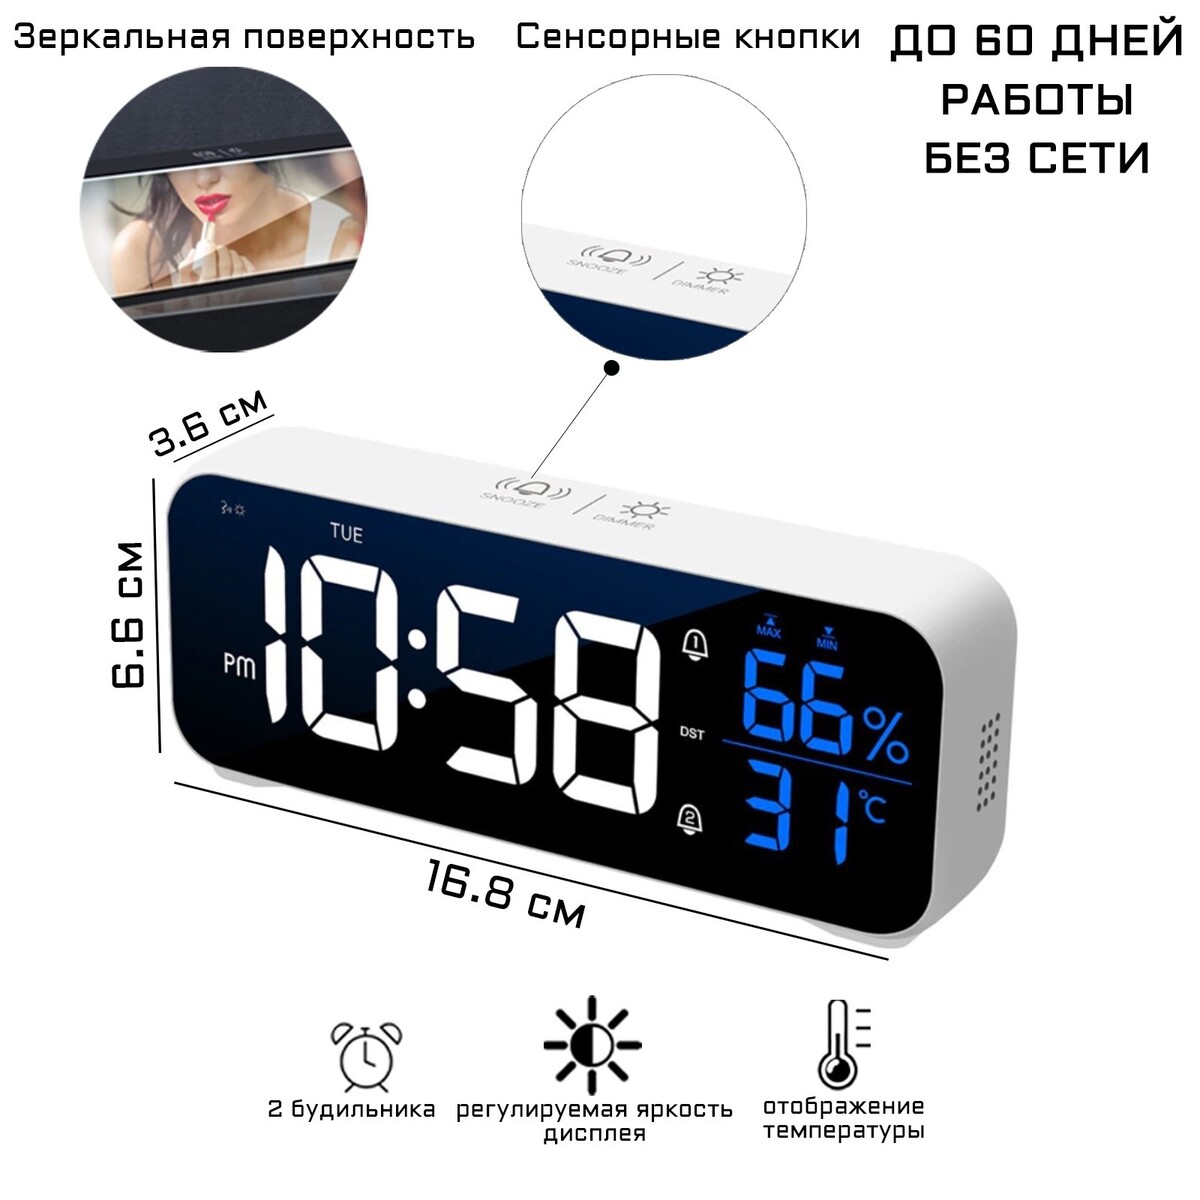 Часы - будильник электронные настольные: календарь, термометр, гигрометр, 16.8 х 6.6 см часы настольные электронные будильник термометр календарь usb 15х6 3 см синие цифры